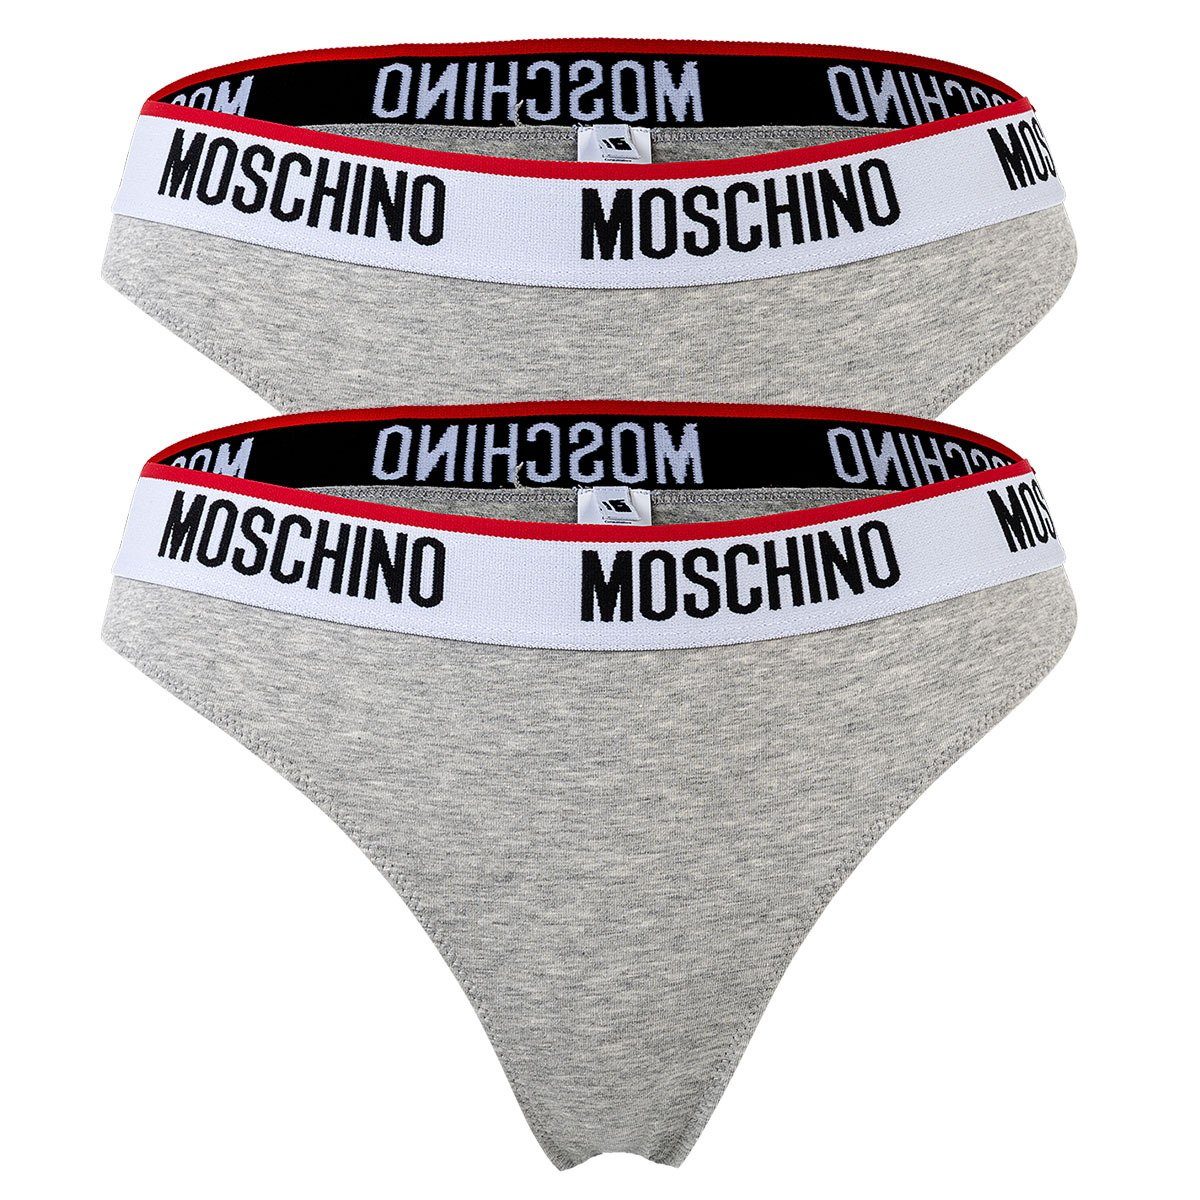 Moschino Slip Damen Slips 2er Pack - Briefs, Unterhose, Cotton